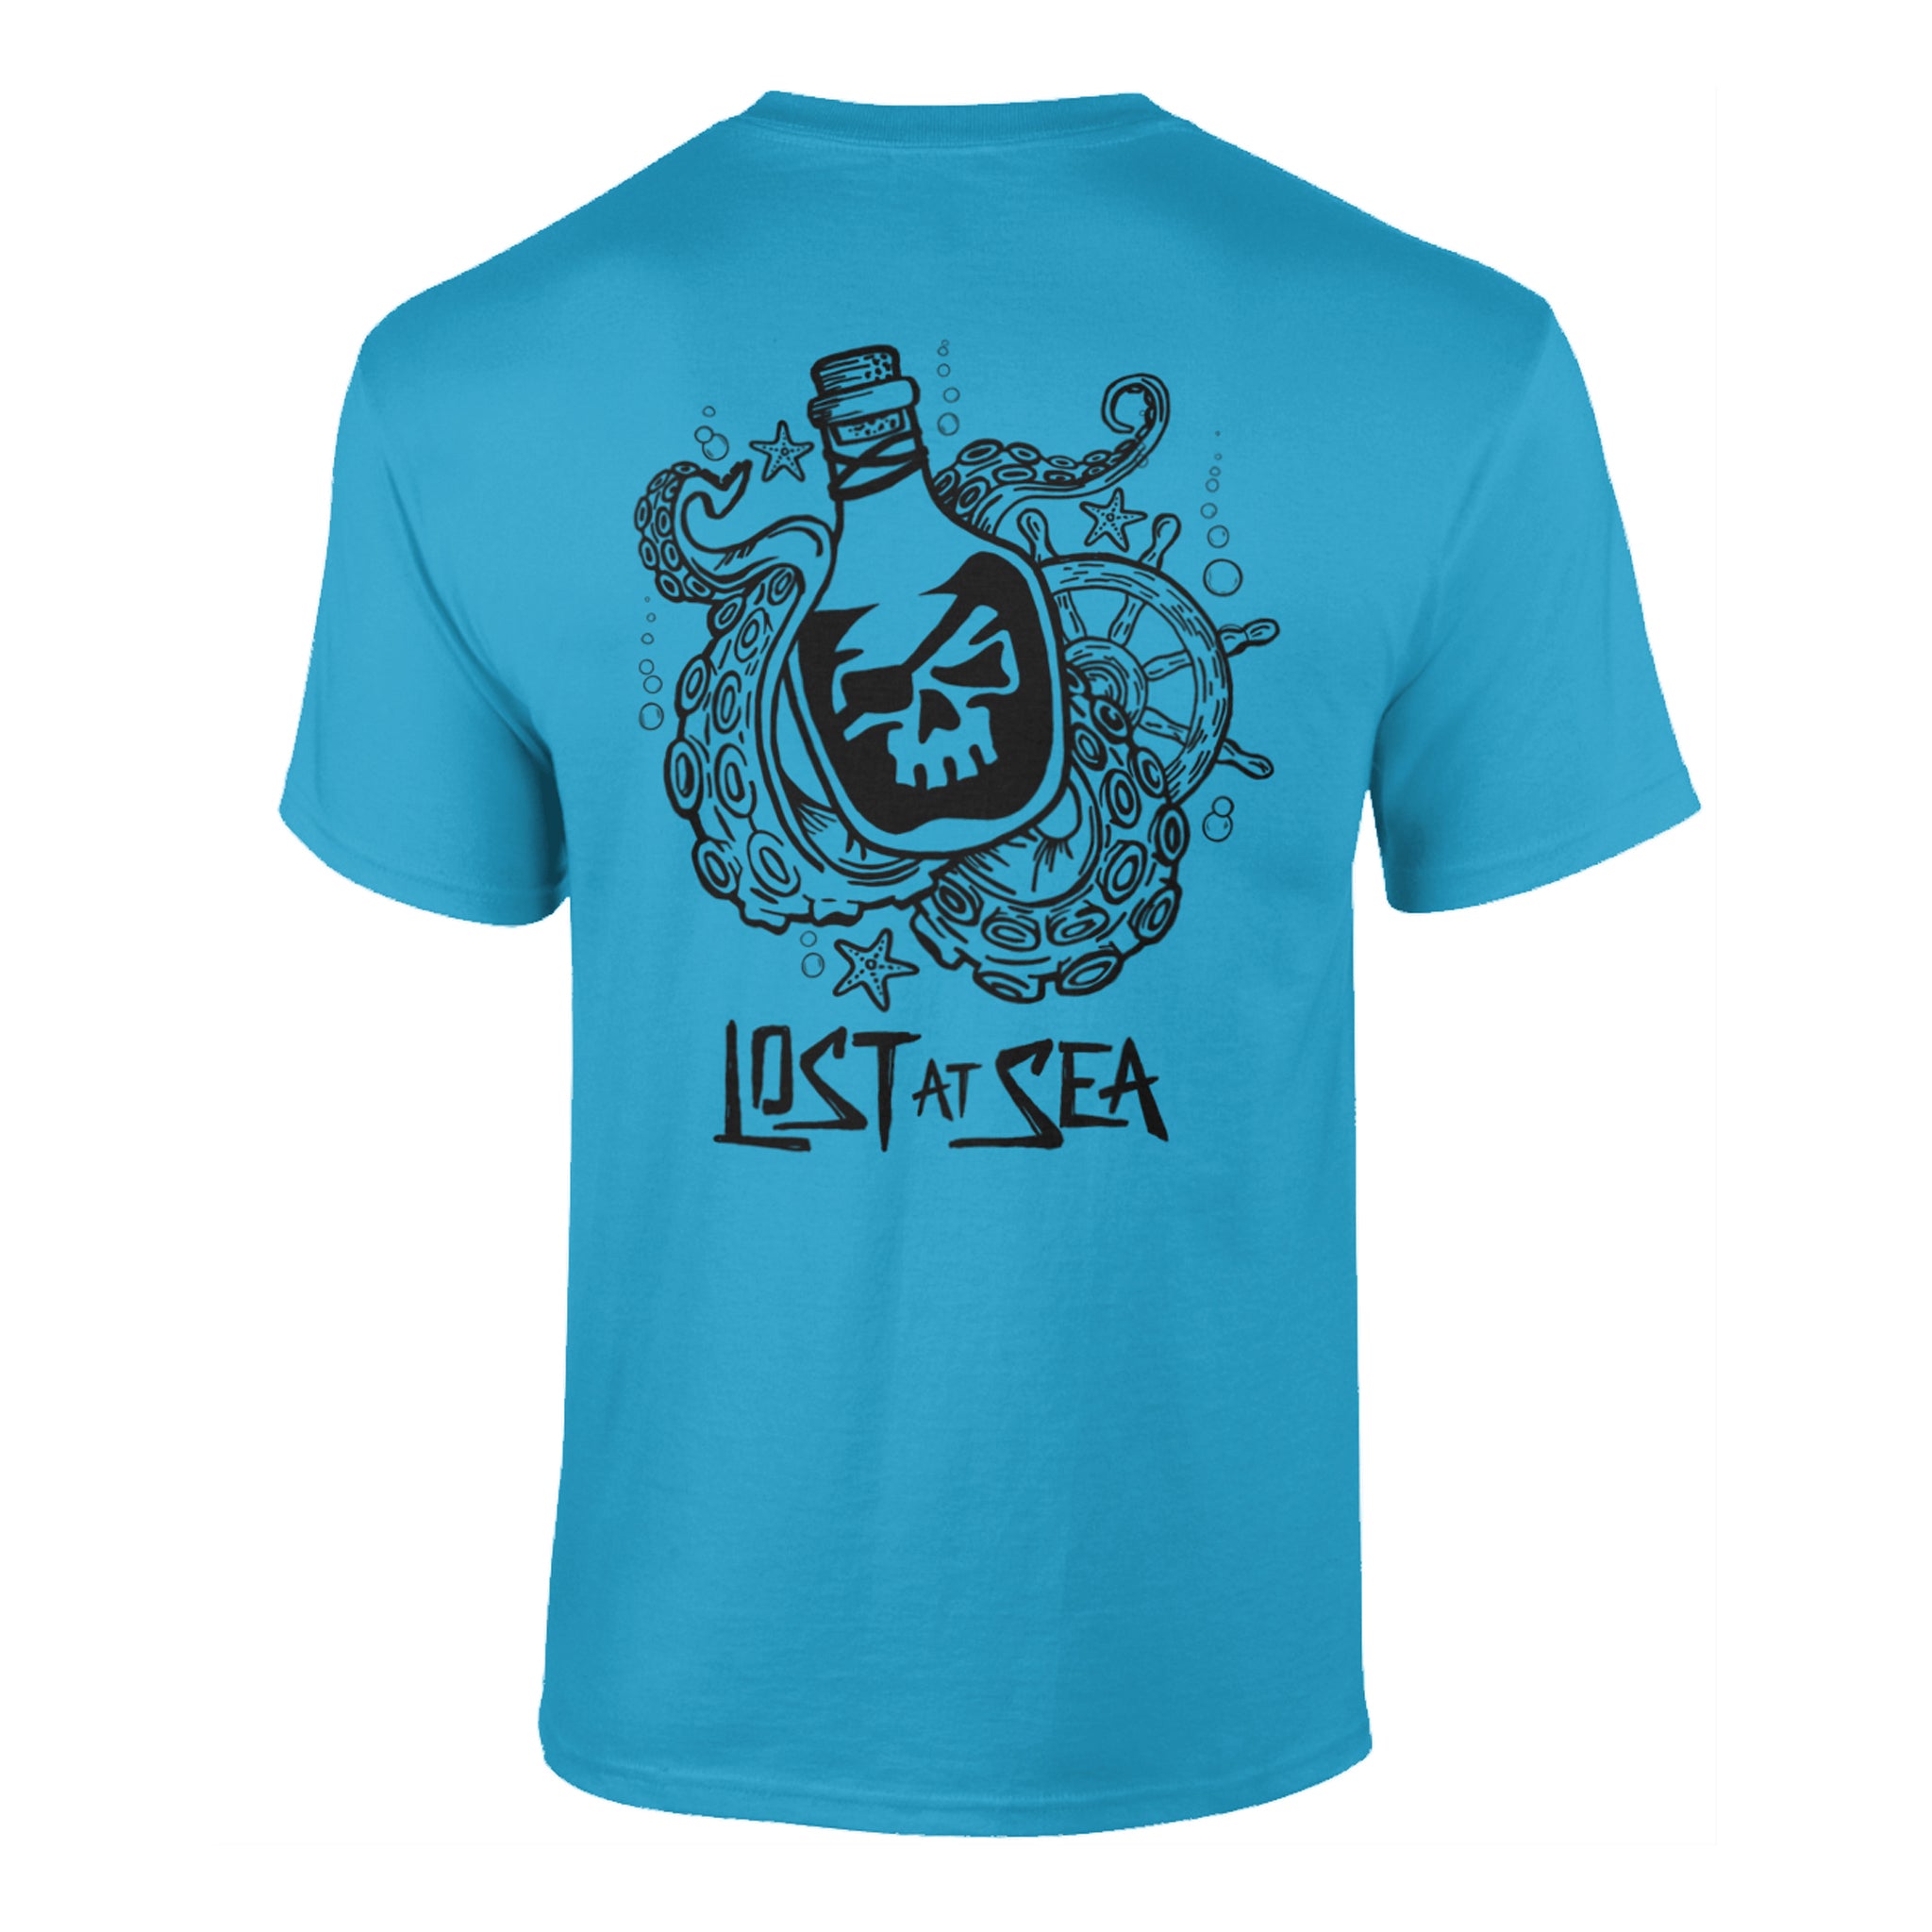 'Lost at Sea' Mens T-Shirt